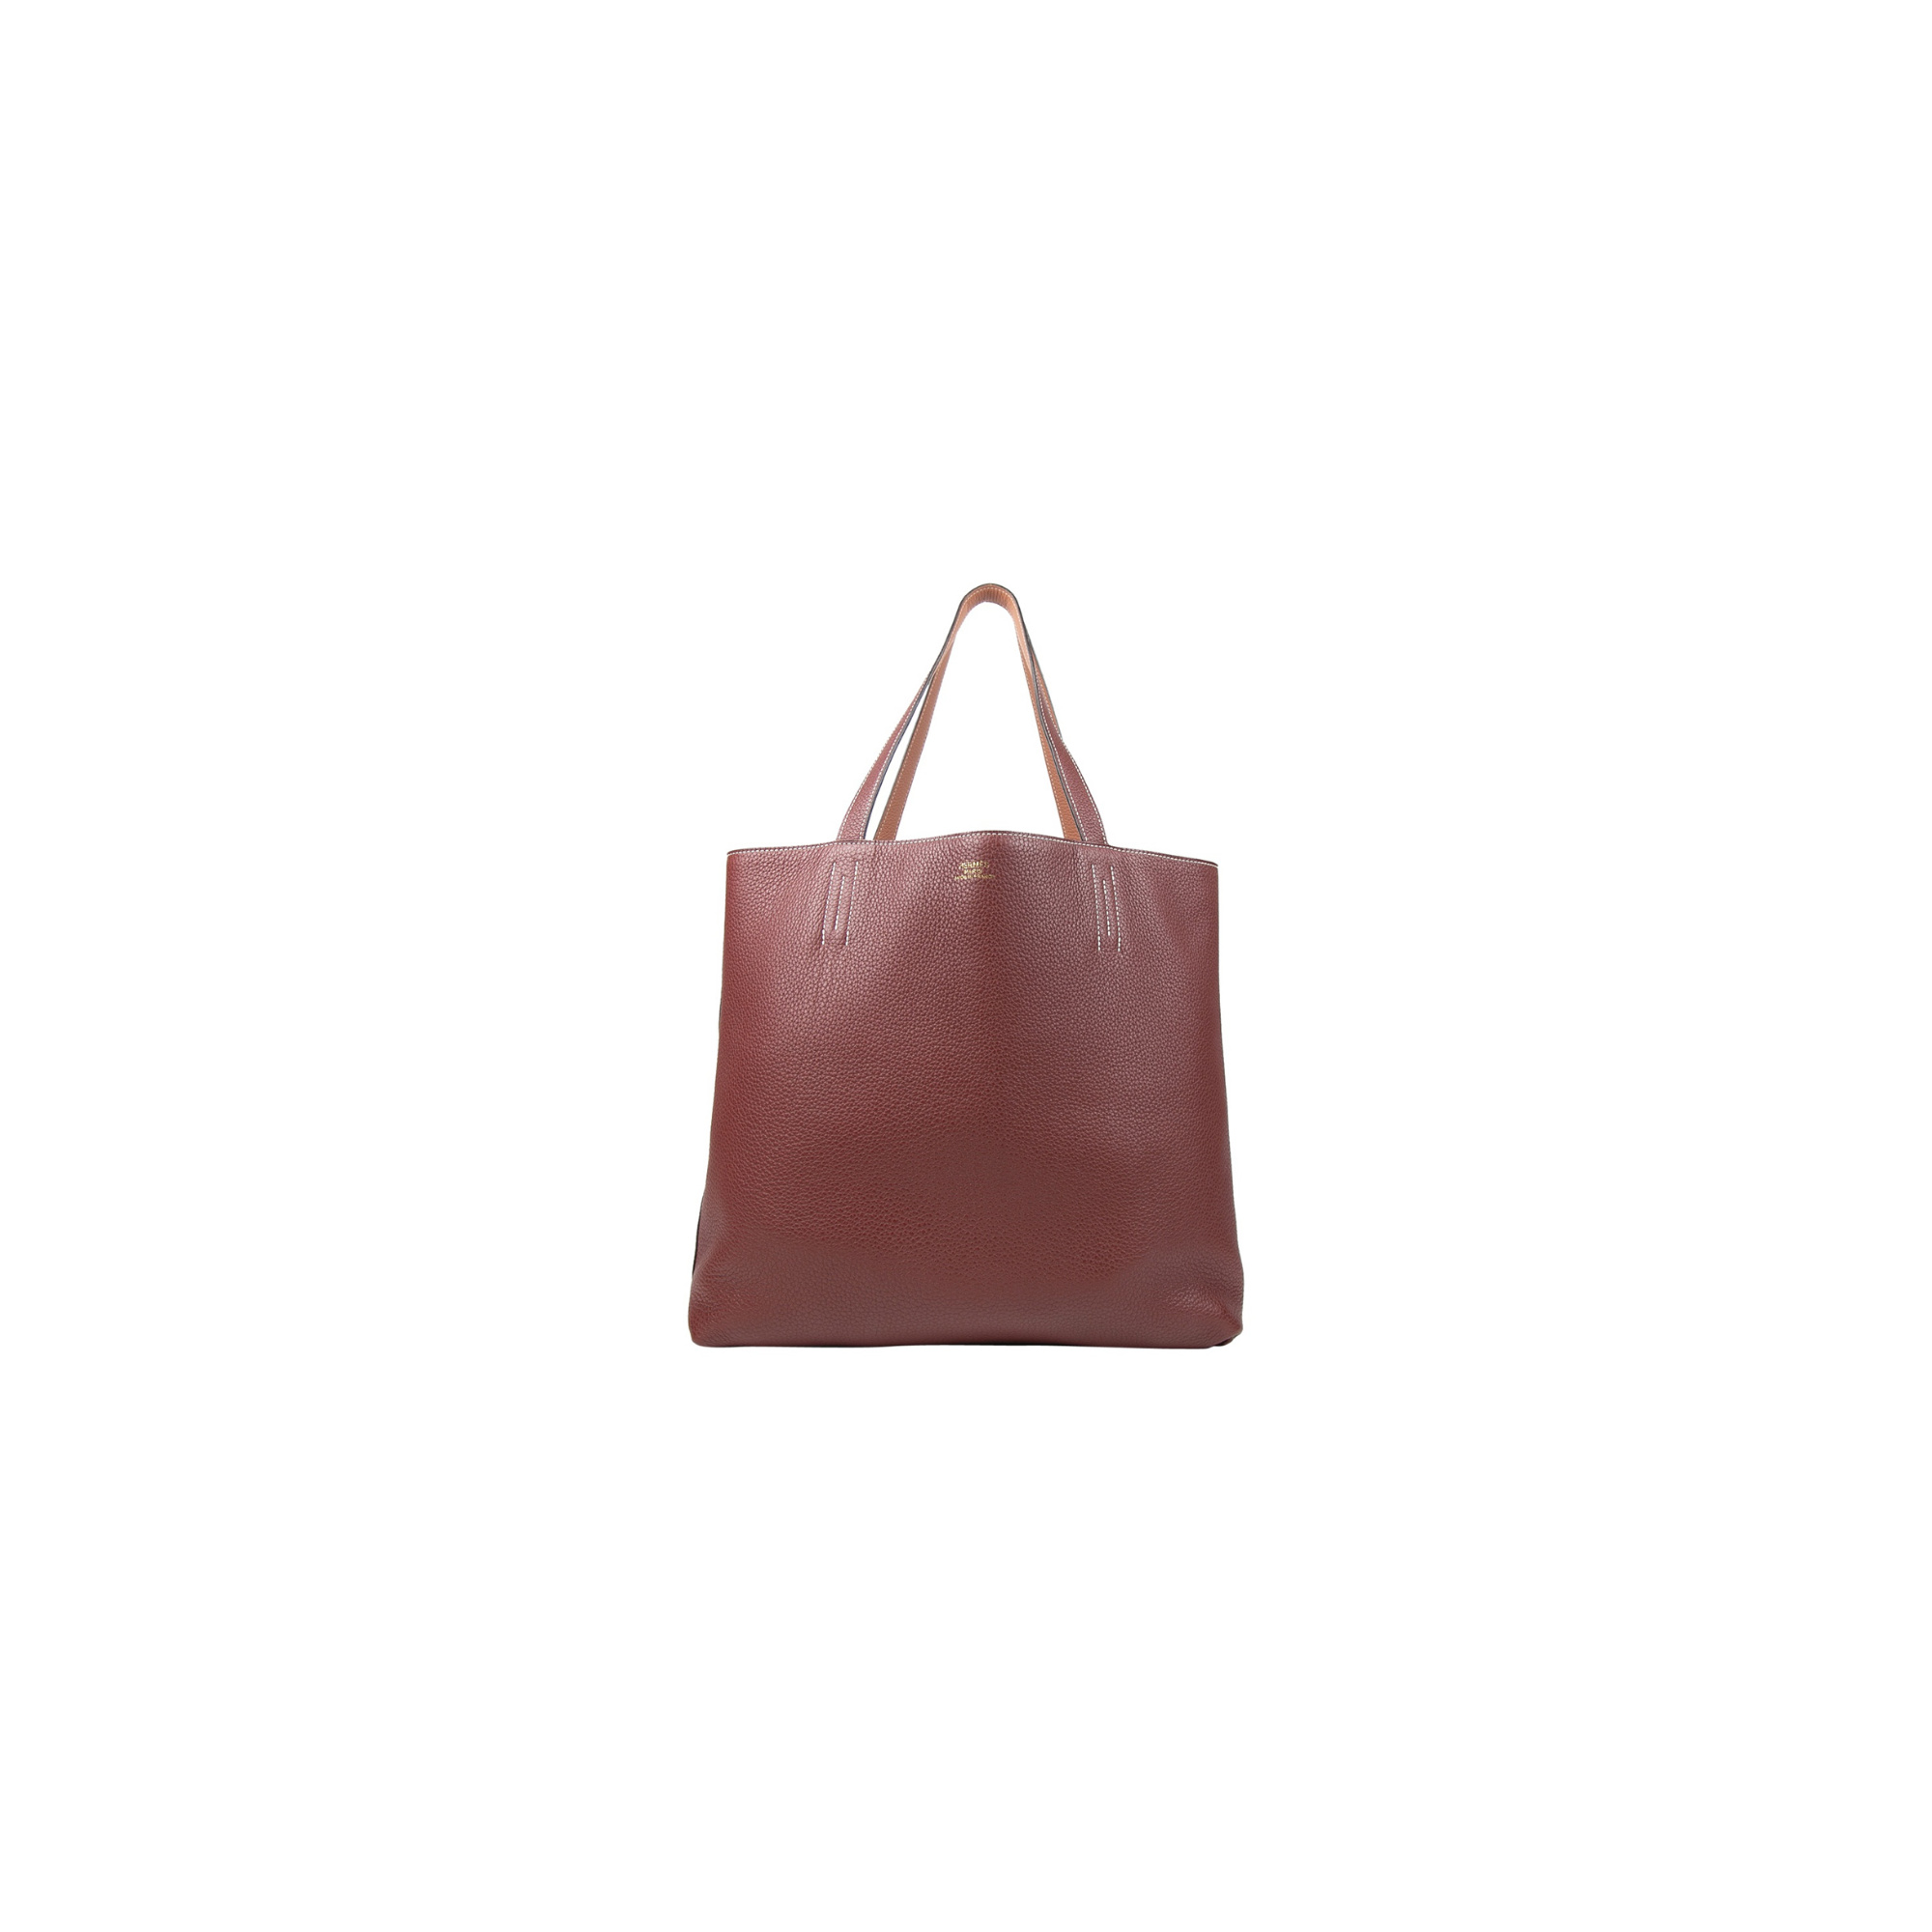 Chanel Gabrielle Black Hobo Bag - Meghan Markle's Handbags